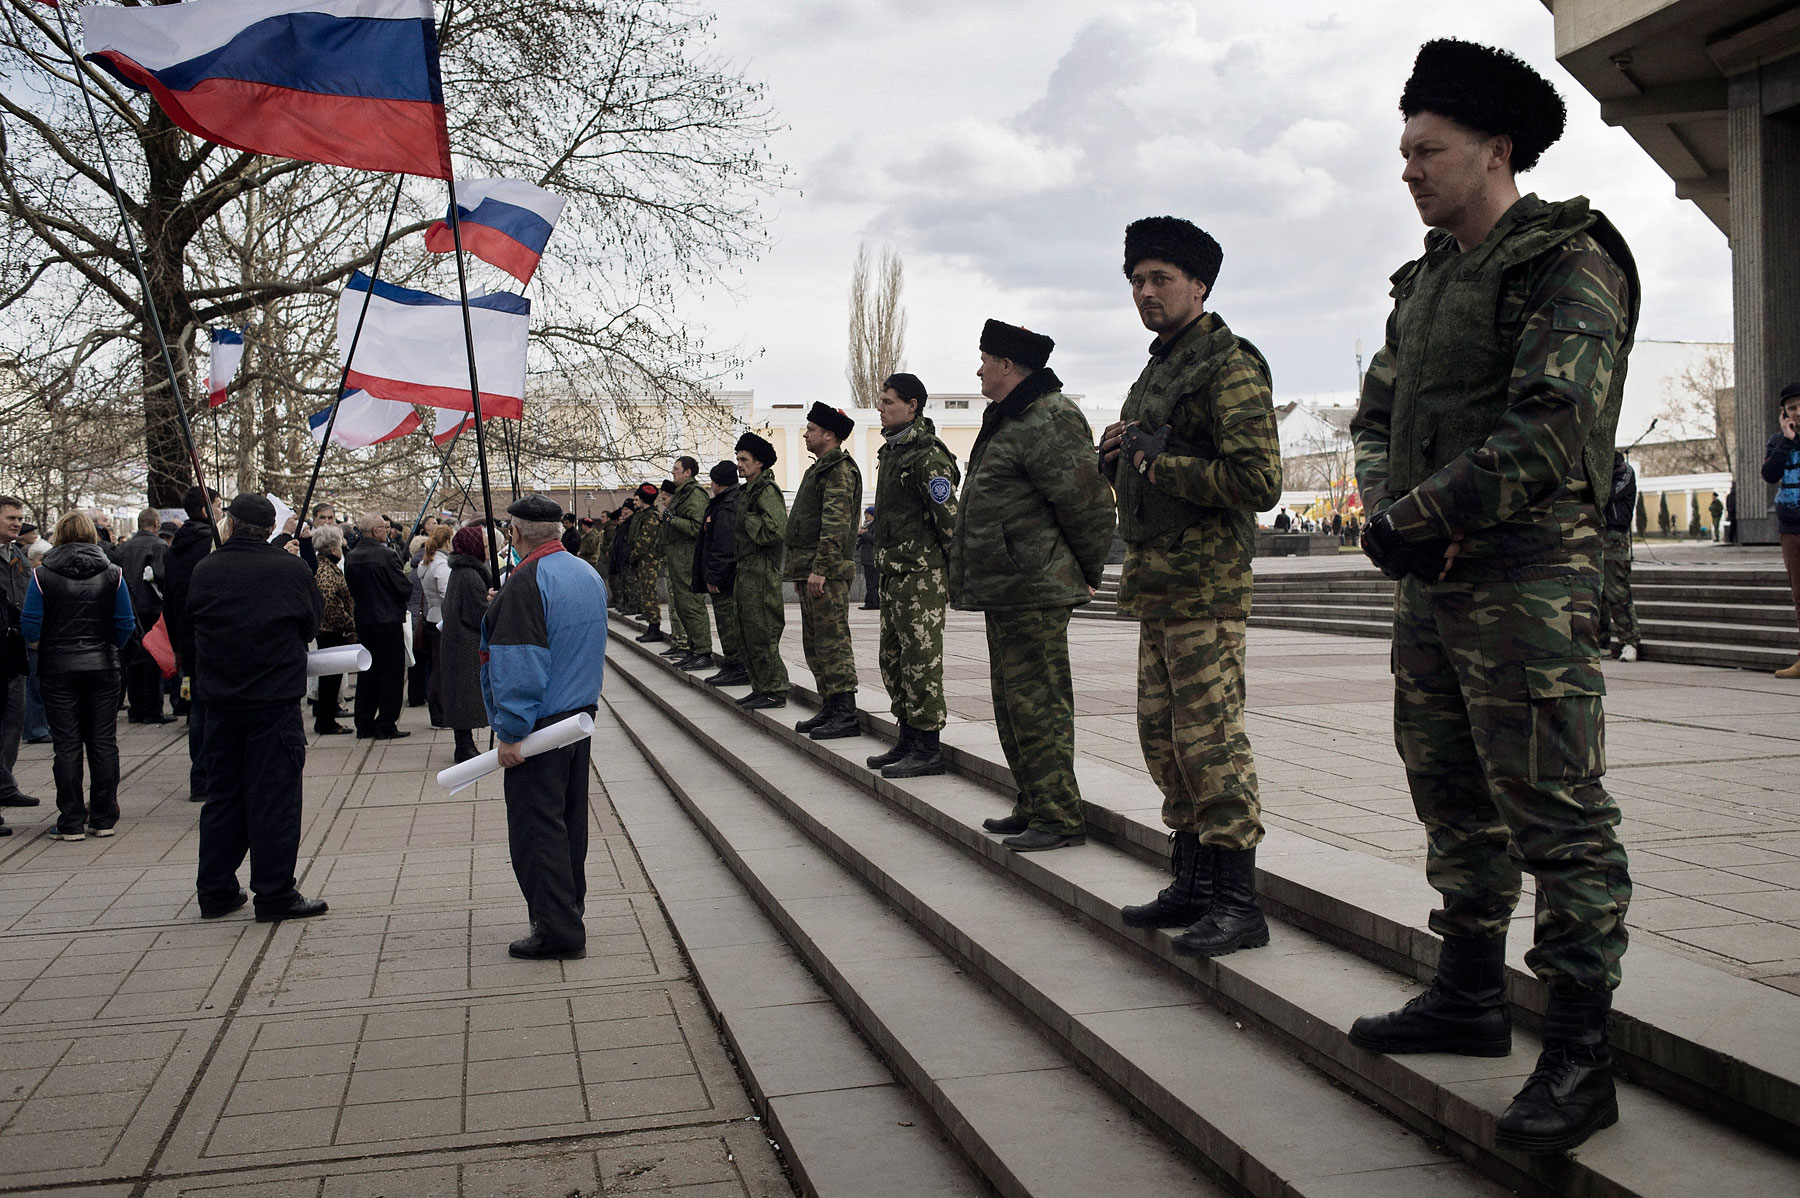 Cossacks guard the local parliament building in Crimea's capital Simferopol, March 6, 2014. (Yuri Kozyrev—NOOR for TIME)